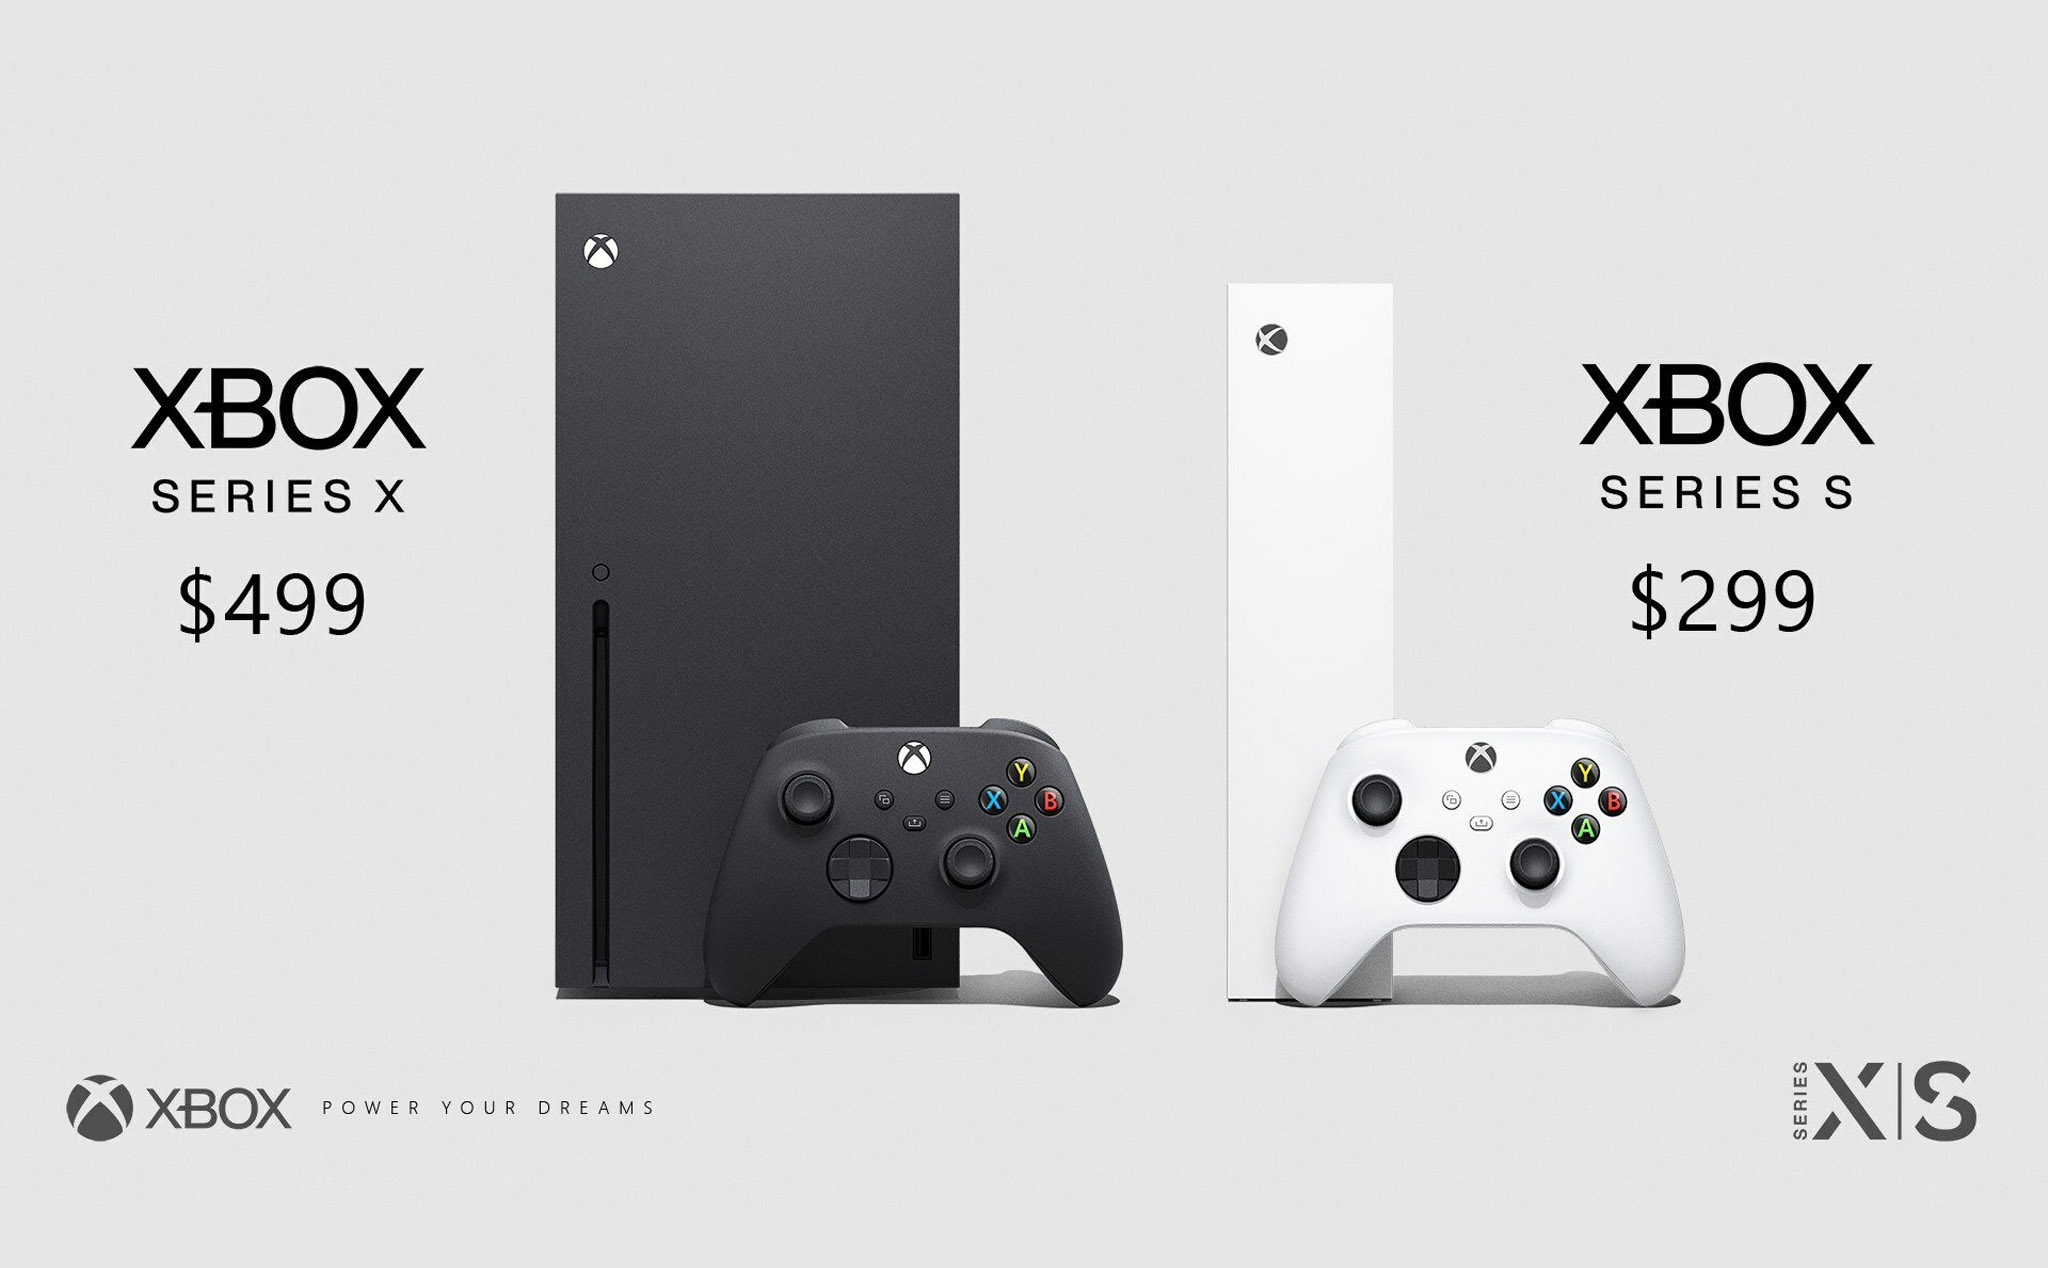 Xbox chính thức: Series X giá 499 USD, GPU 12Tflops, 1TB NVMe SSD, chơi game 8K 60 hoặc 4K 120 FPS